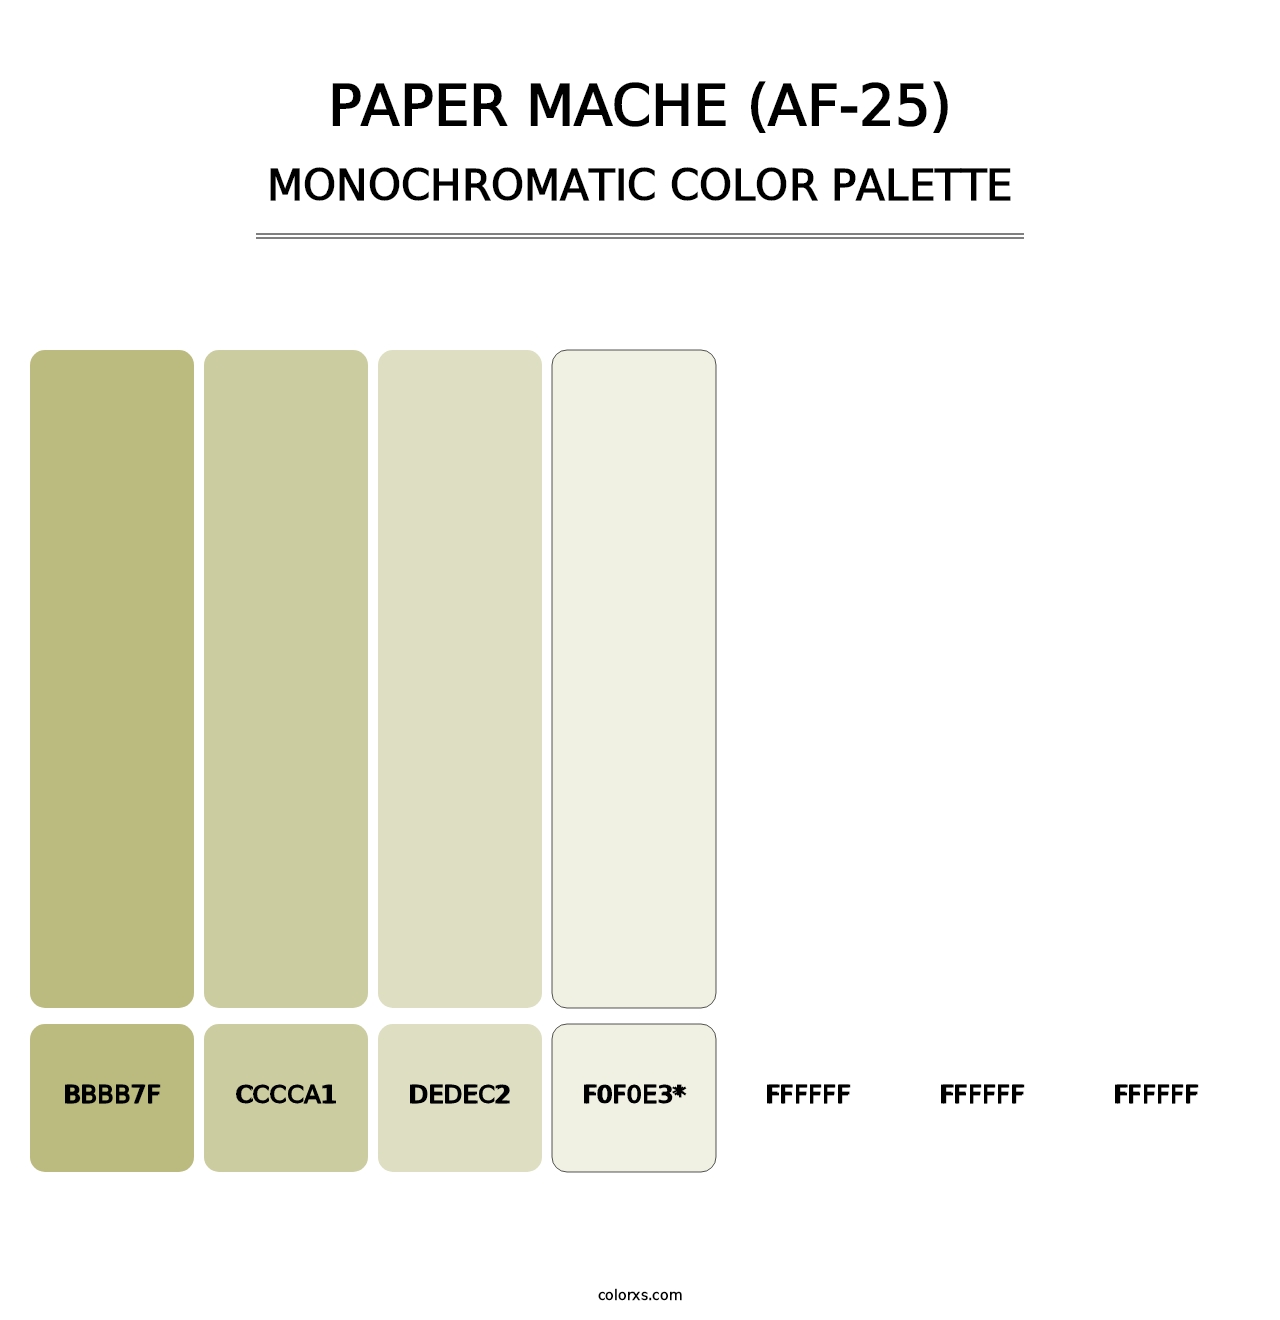 Paper Mache (AF-25) - Monochromatic Color Palette